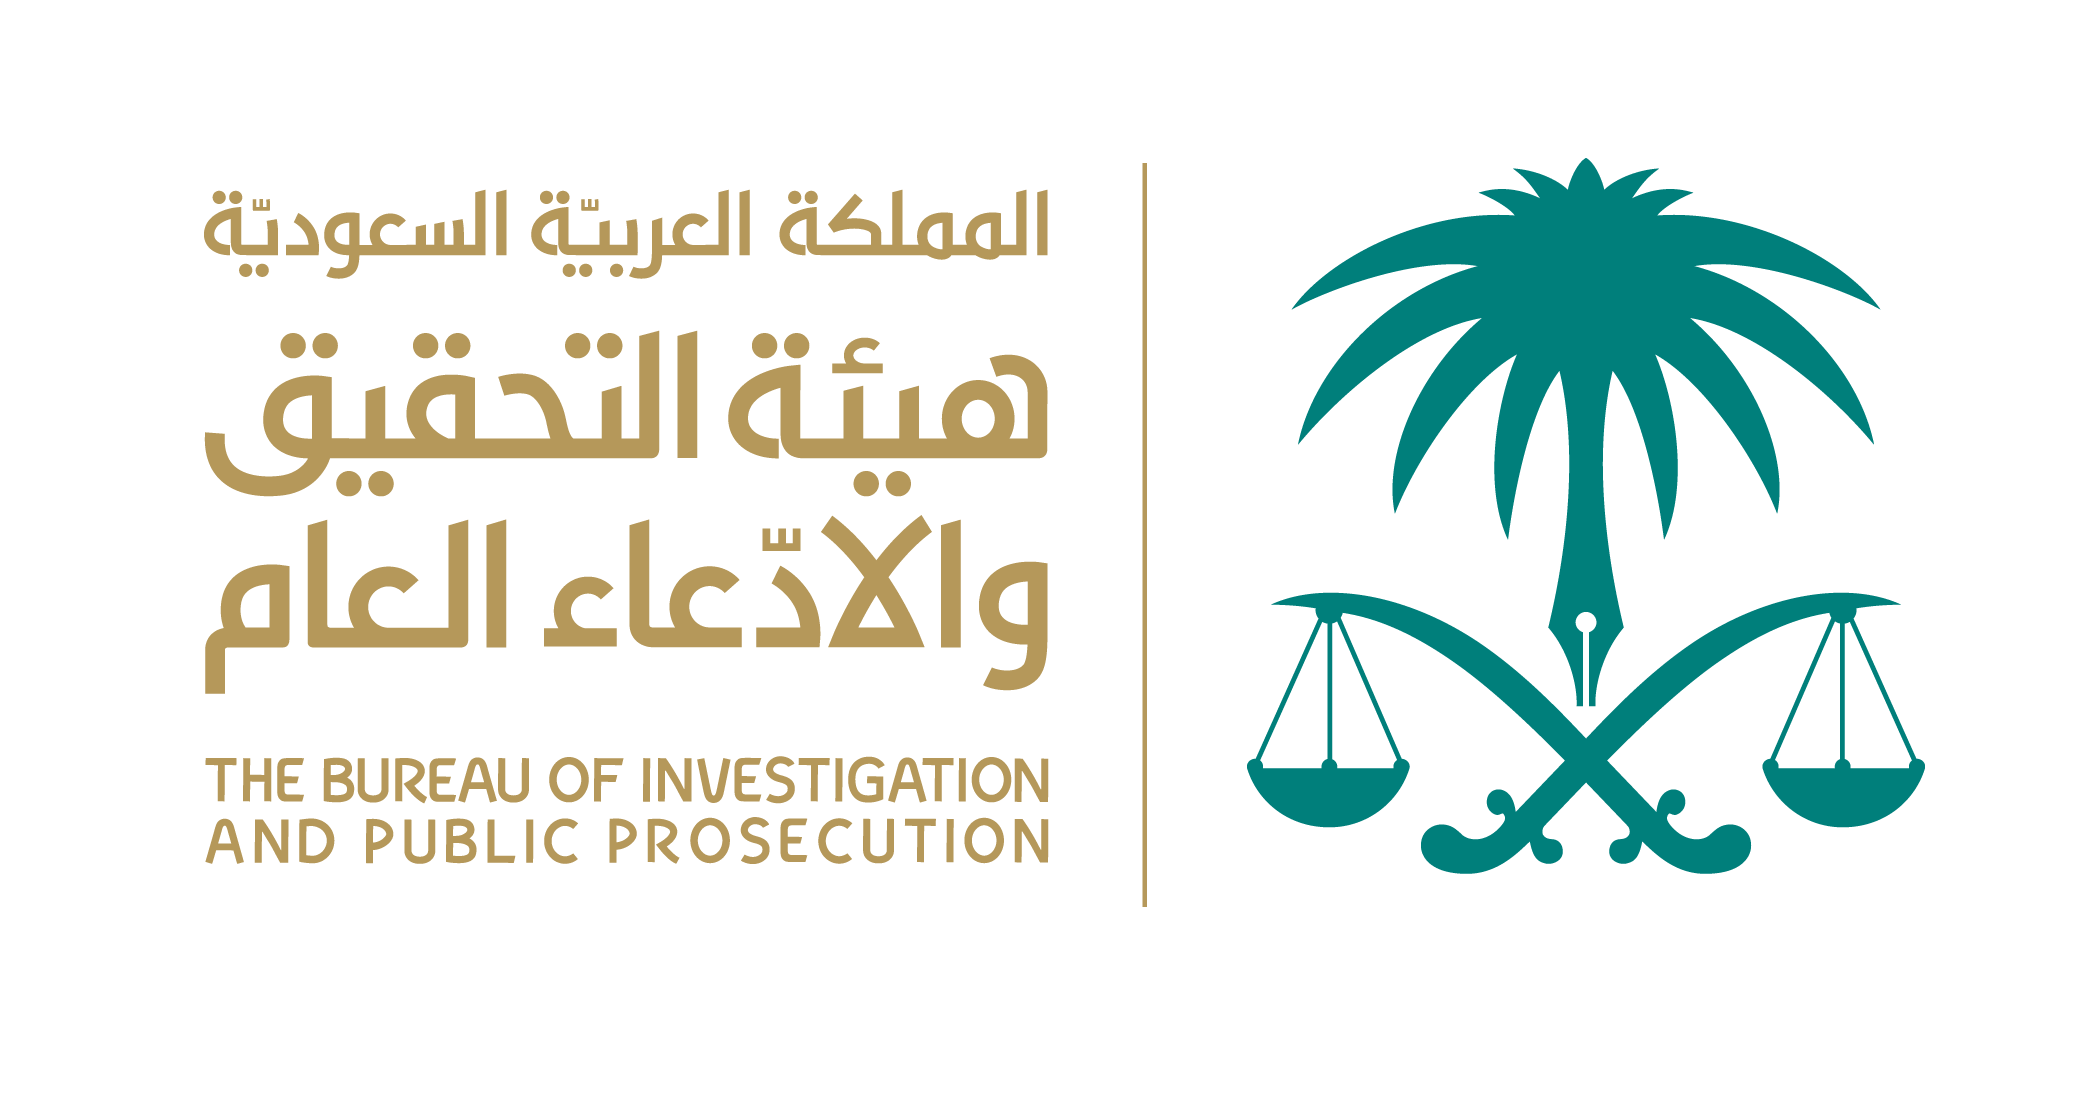 هيئة التحقيق والادعاء العام تعلن عن توفر وظائف شاغرة على كادر الأعضاء بمرتبة (ملازم تحقيق)